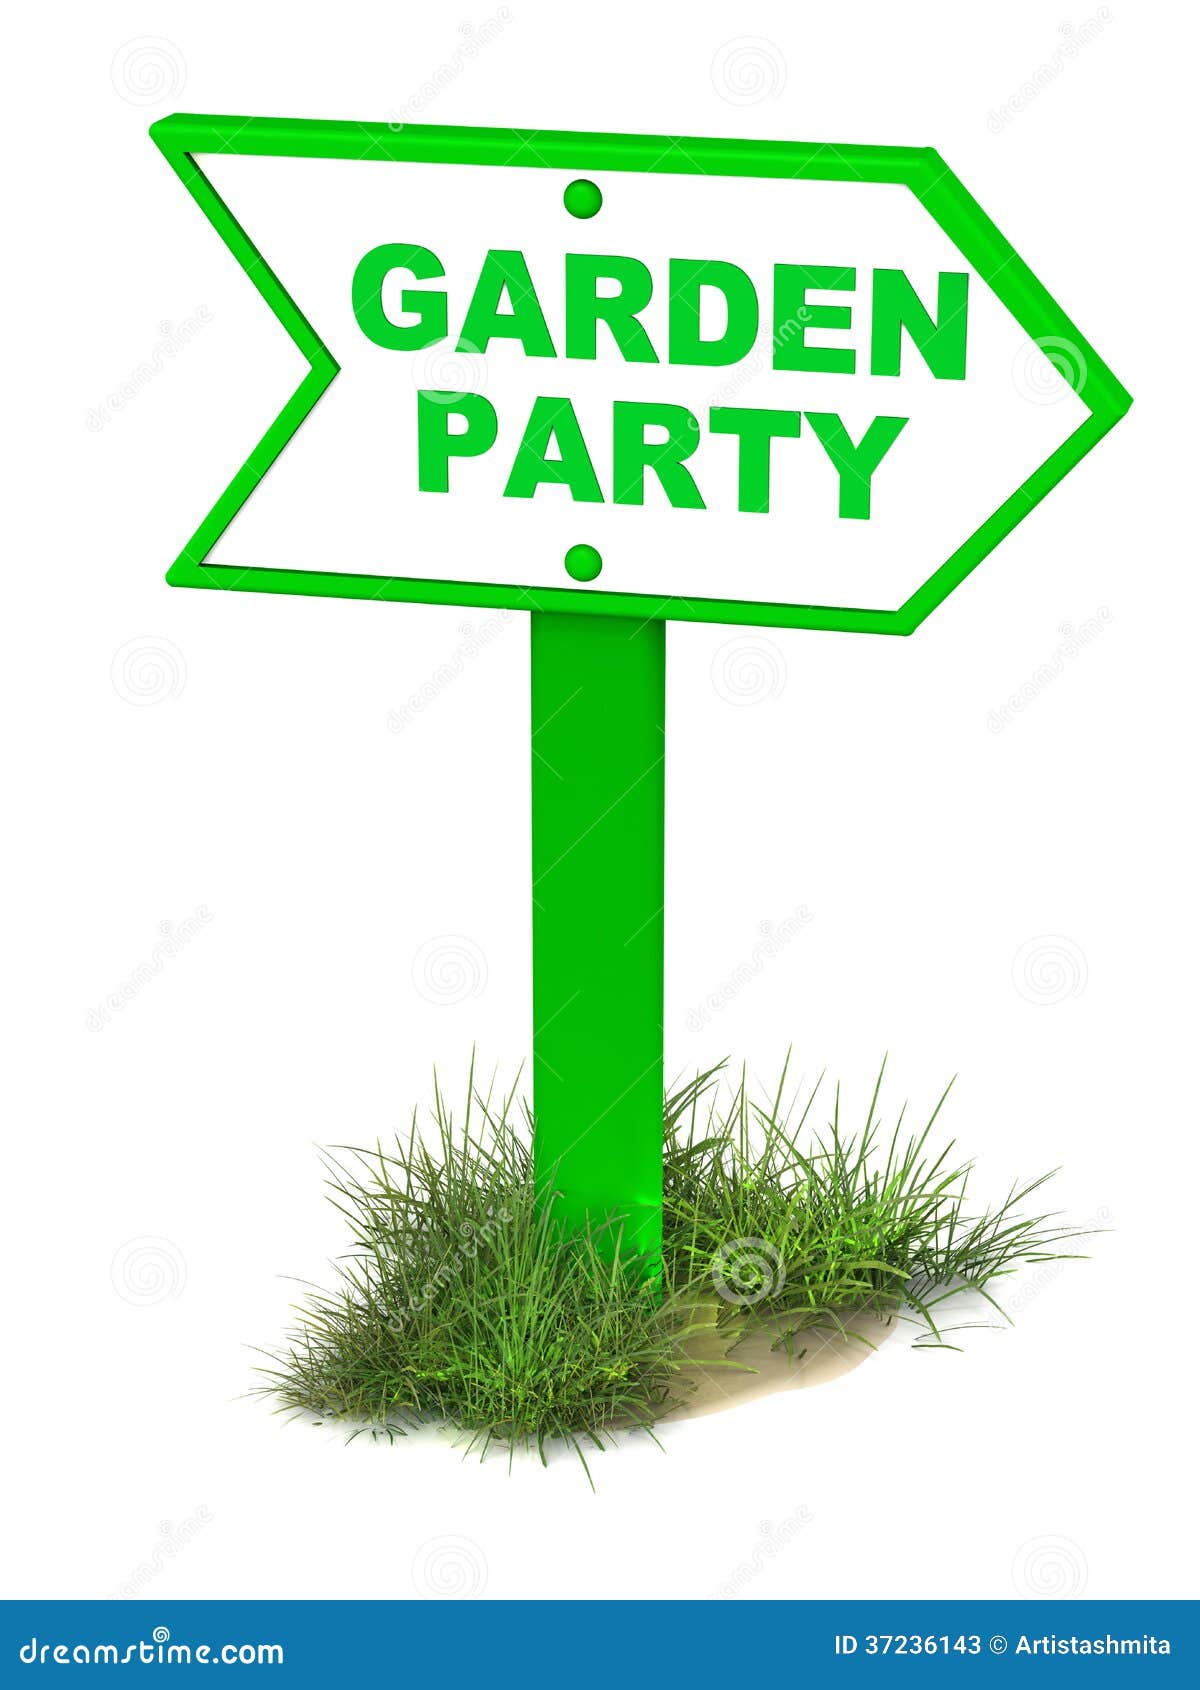 free clip art garden party - photo #22